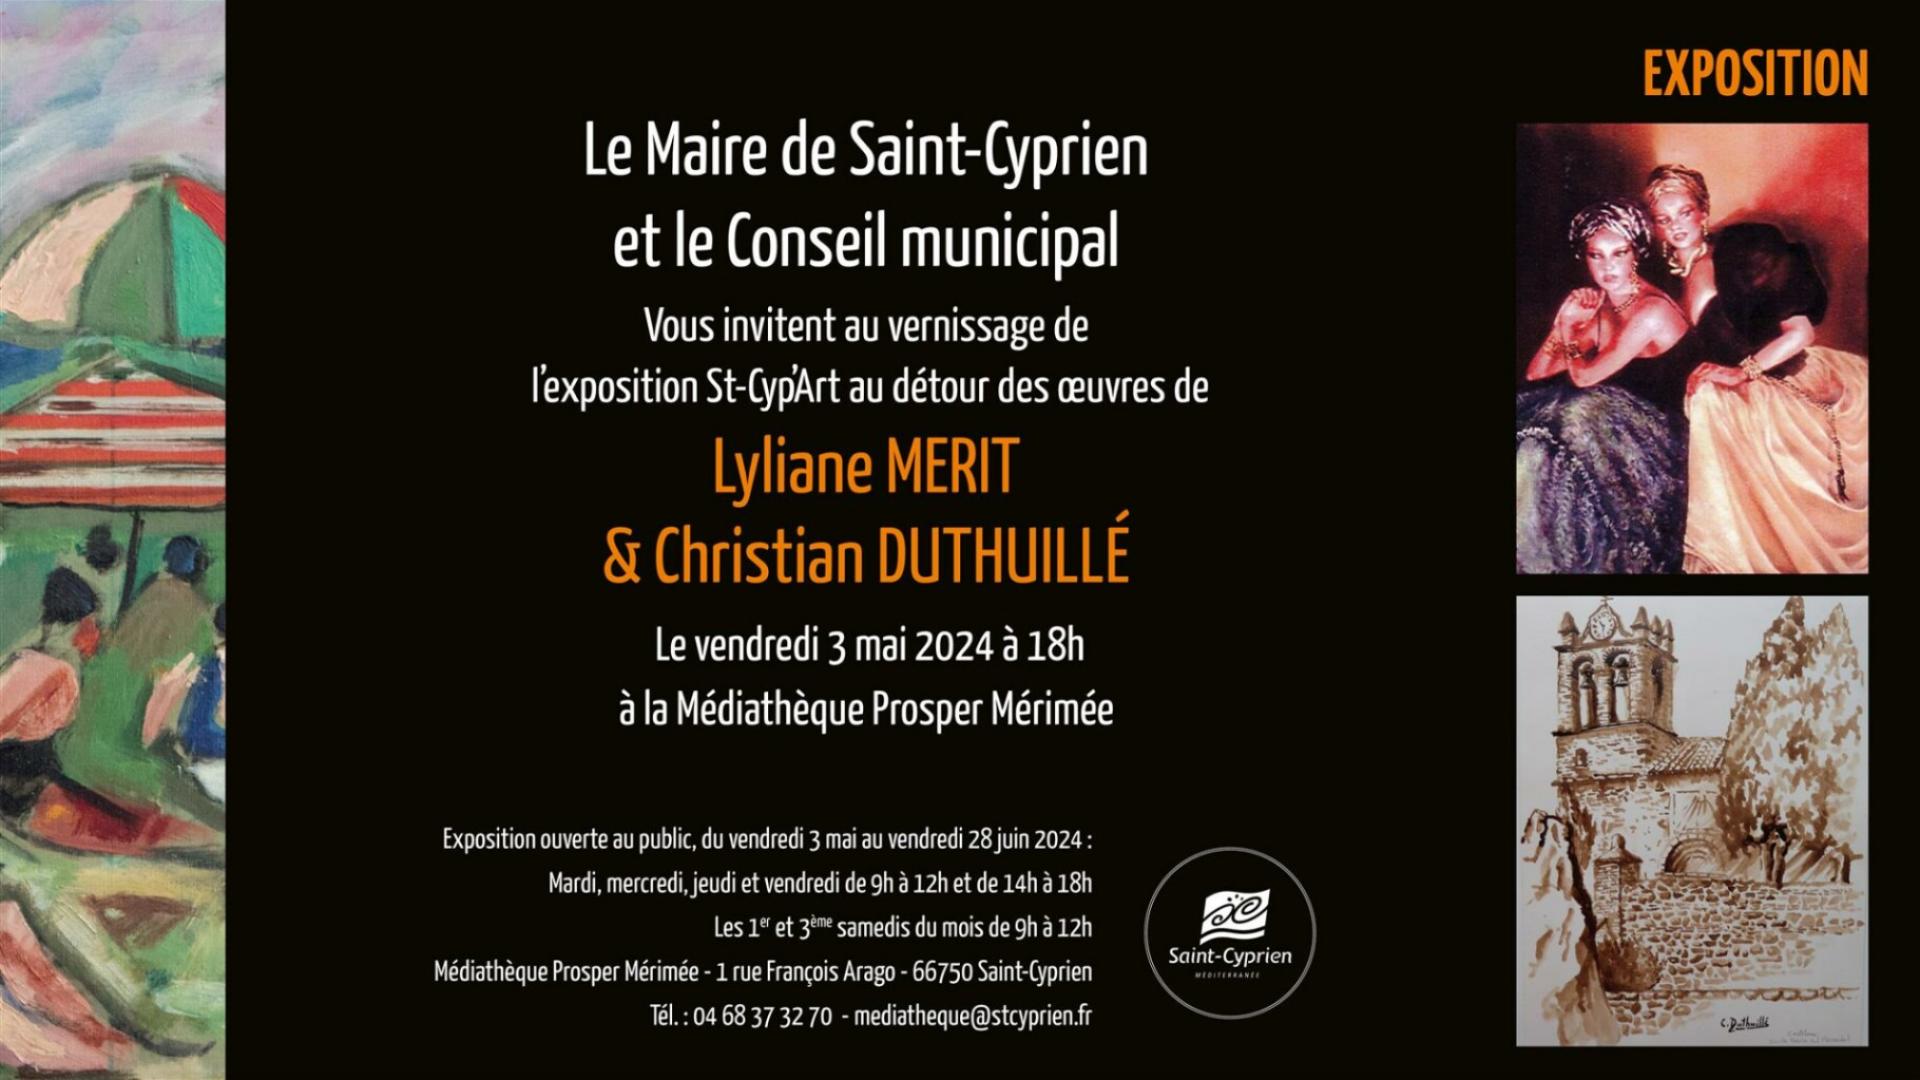 VERNISSAGE DE L'EXPOSITION ST-CYP'ART LYLIANE MERIT & CHRISTIAN DUTHUILLE